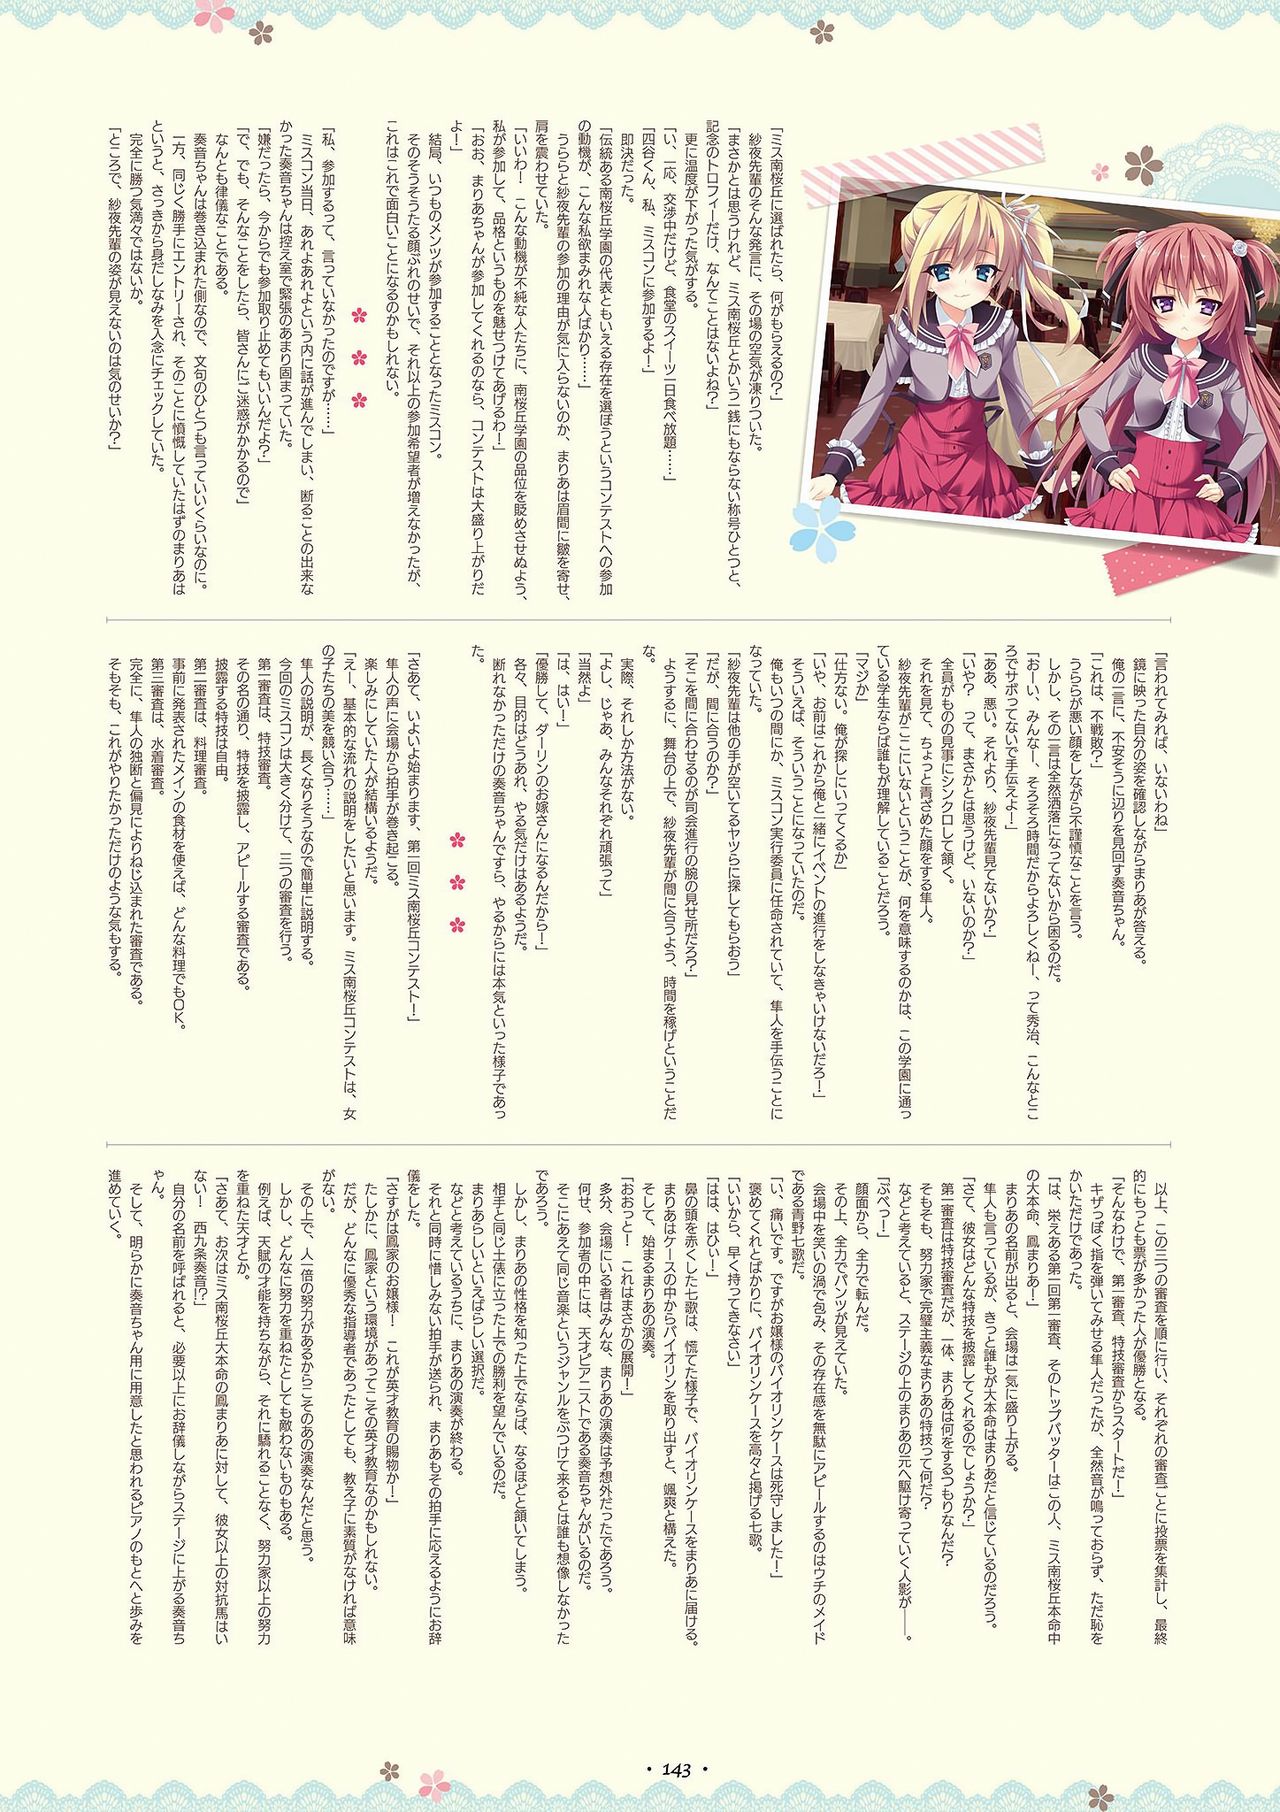 Shukufuku no Kane no Oto wa, Sakura-iro no Kaze to Tomo ni Visual Fanbook 祝福の鐘の音は、桜色の風と共に ビジュアルファンブック